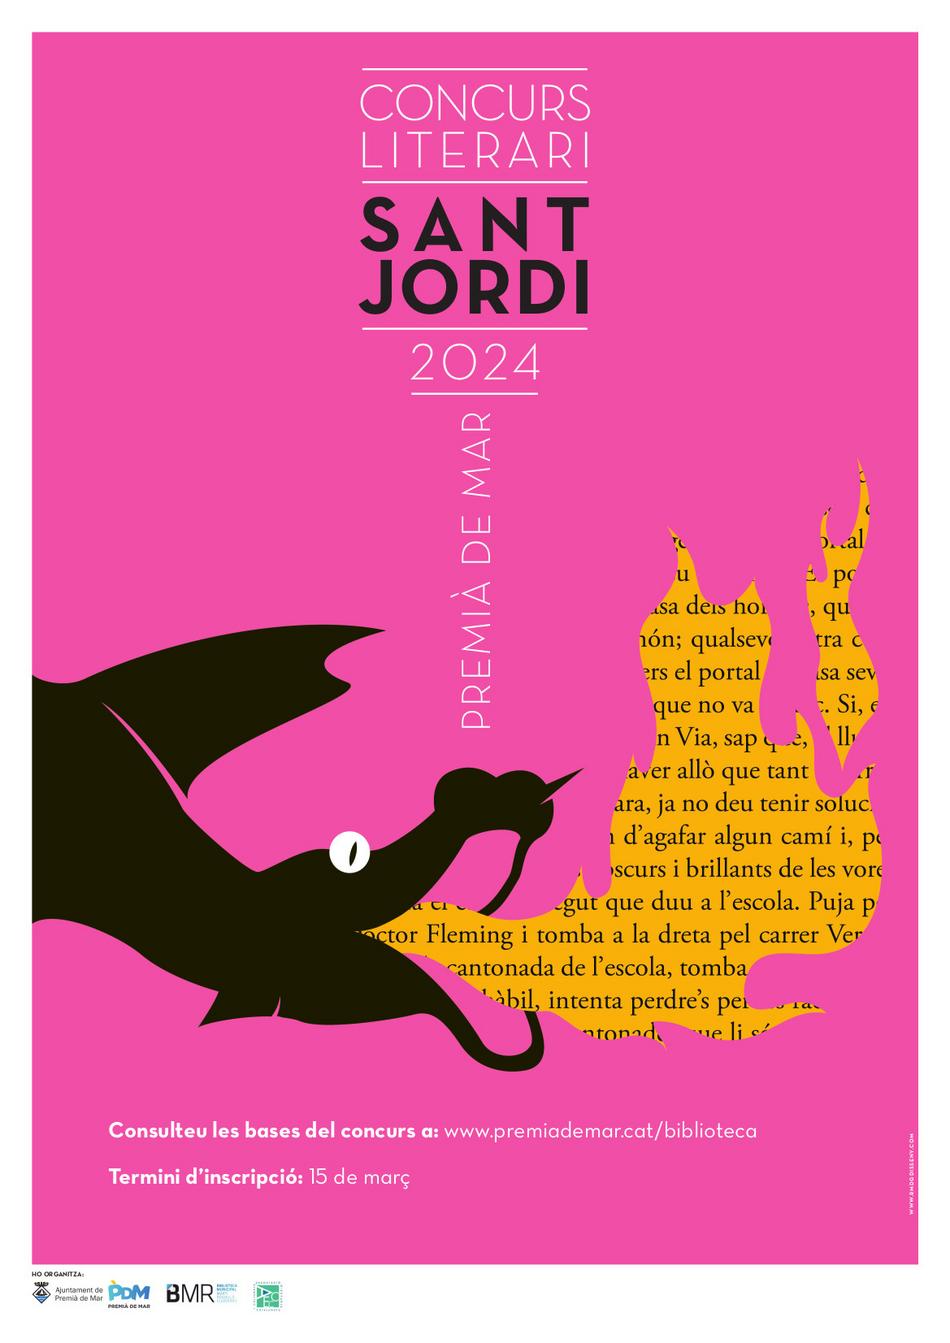 Concurs Literari Sant Jordi 2024